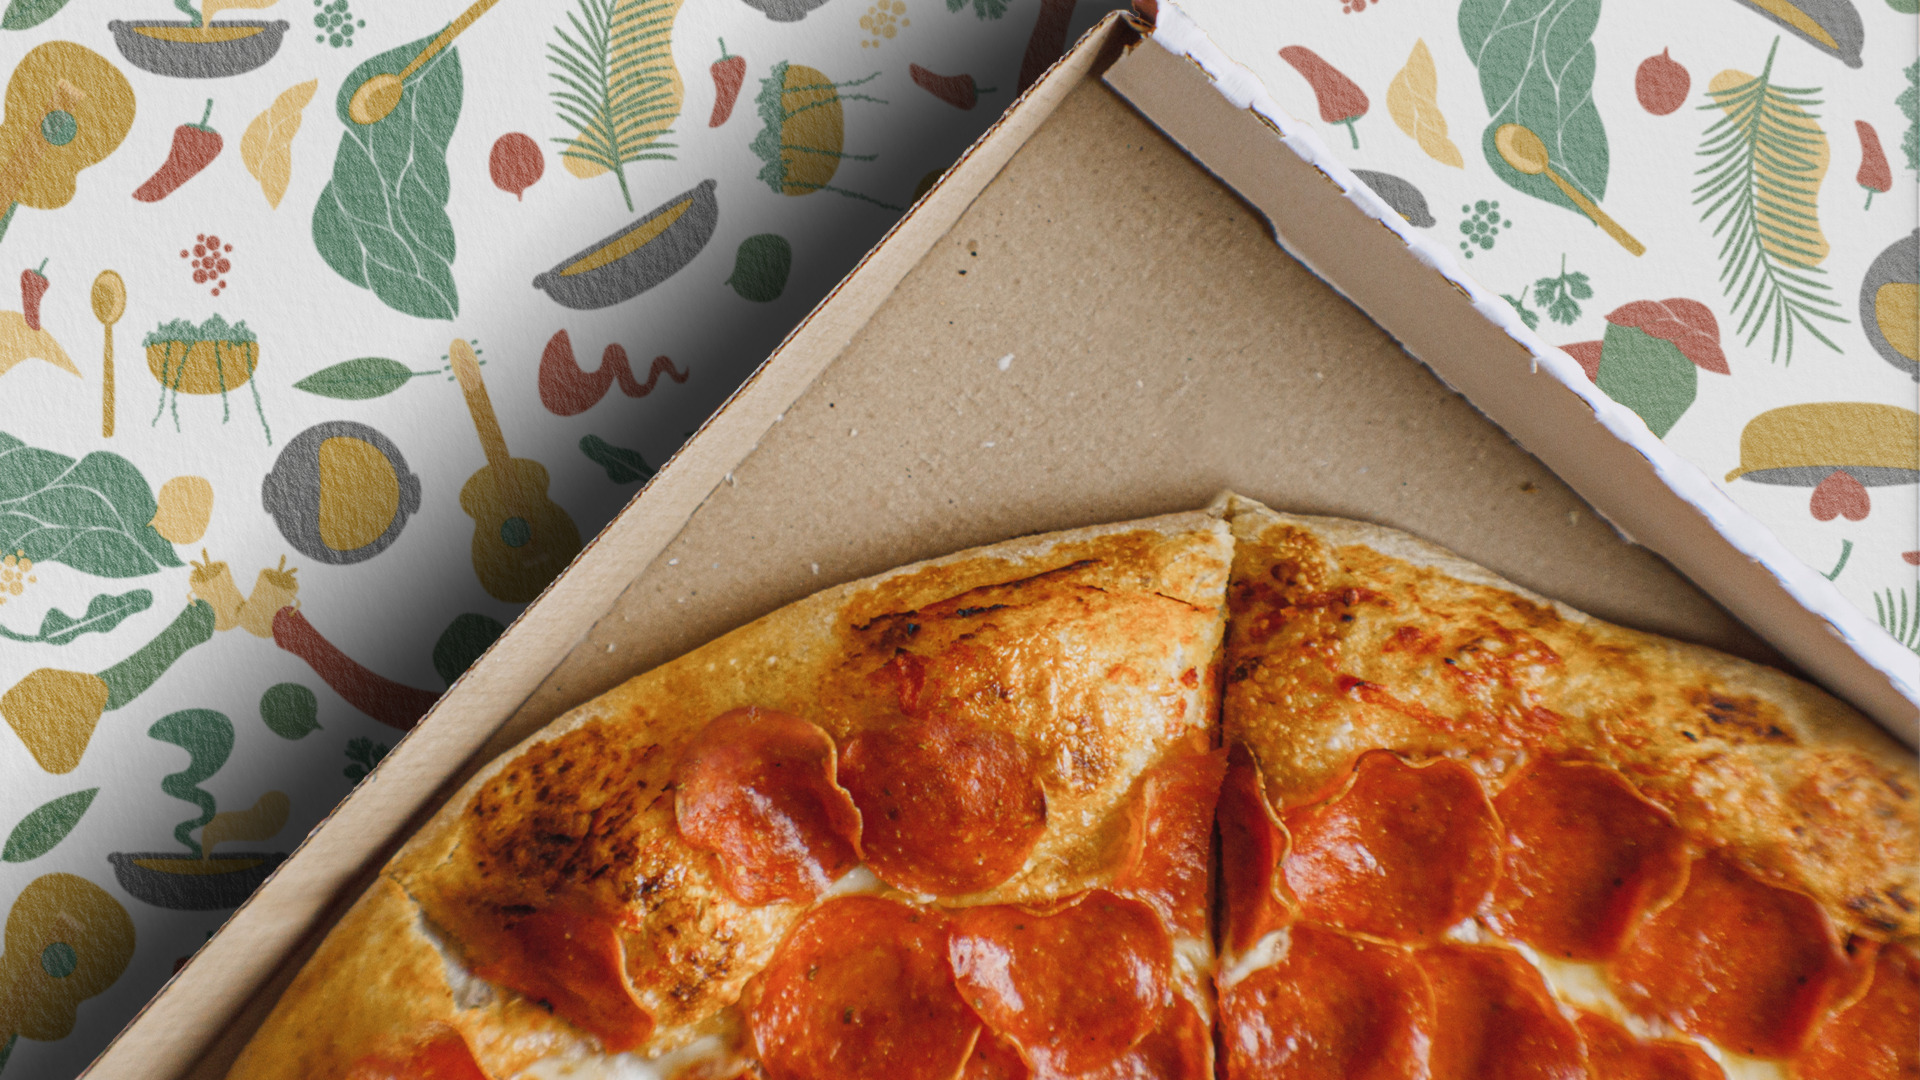 Pizza dentro de caixa em cima de padronagem da marca Raízes